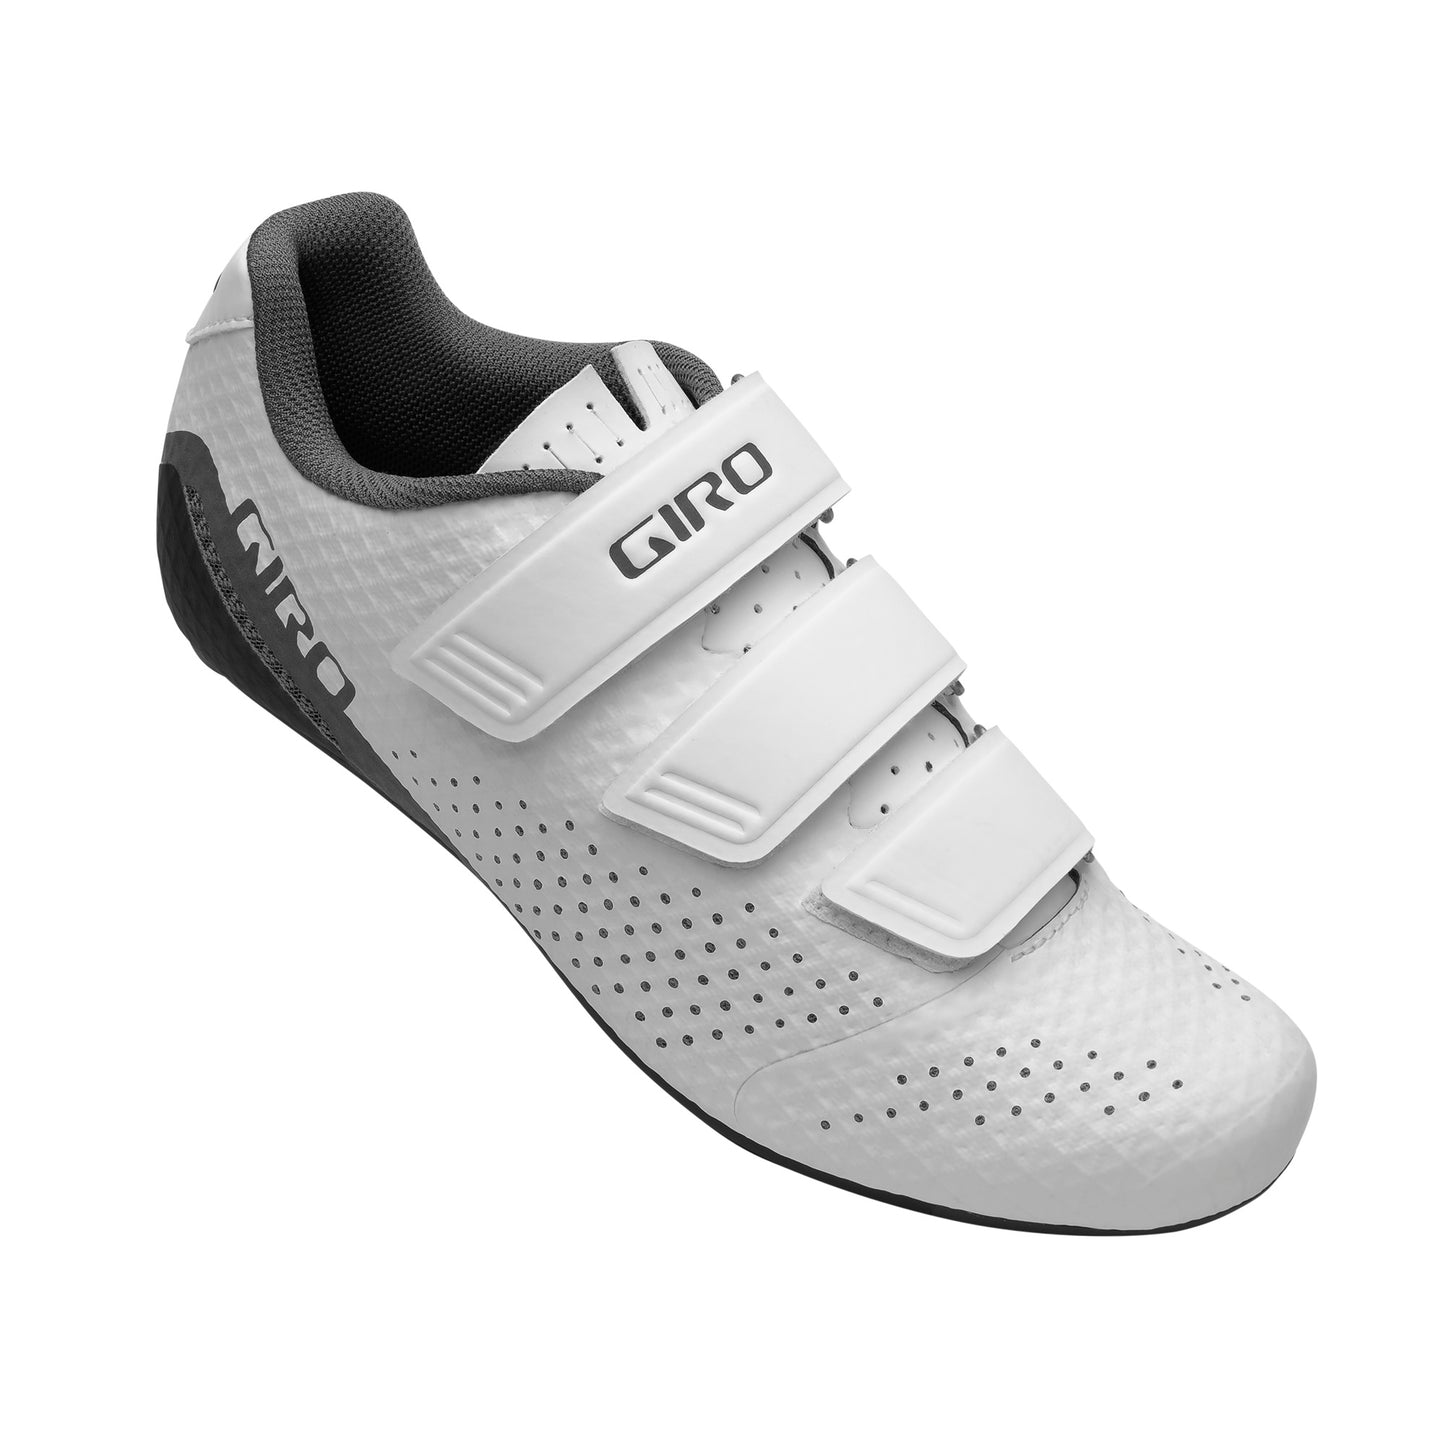 Giro Women's Stylus Shoe - OpenBox White Bike Shoes